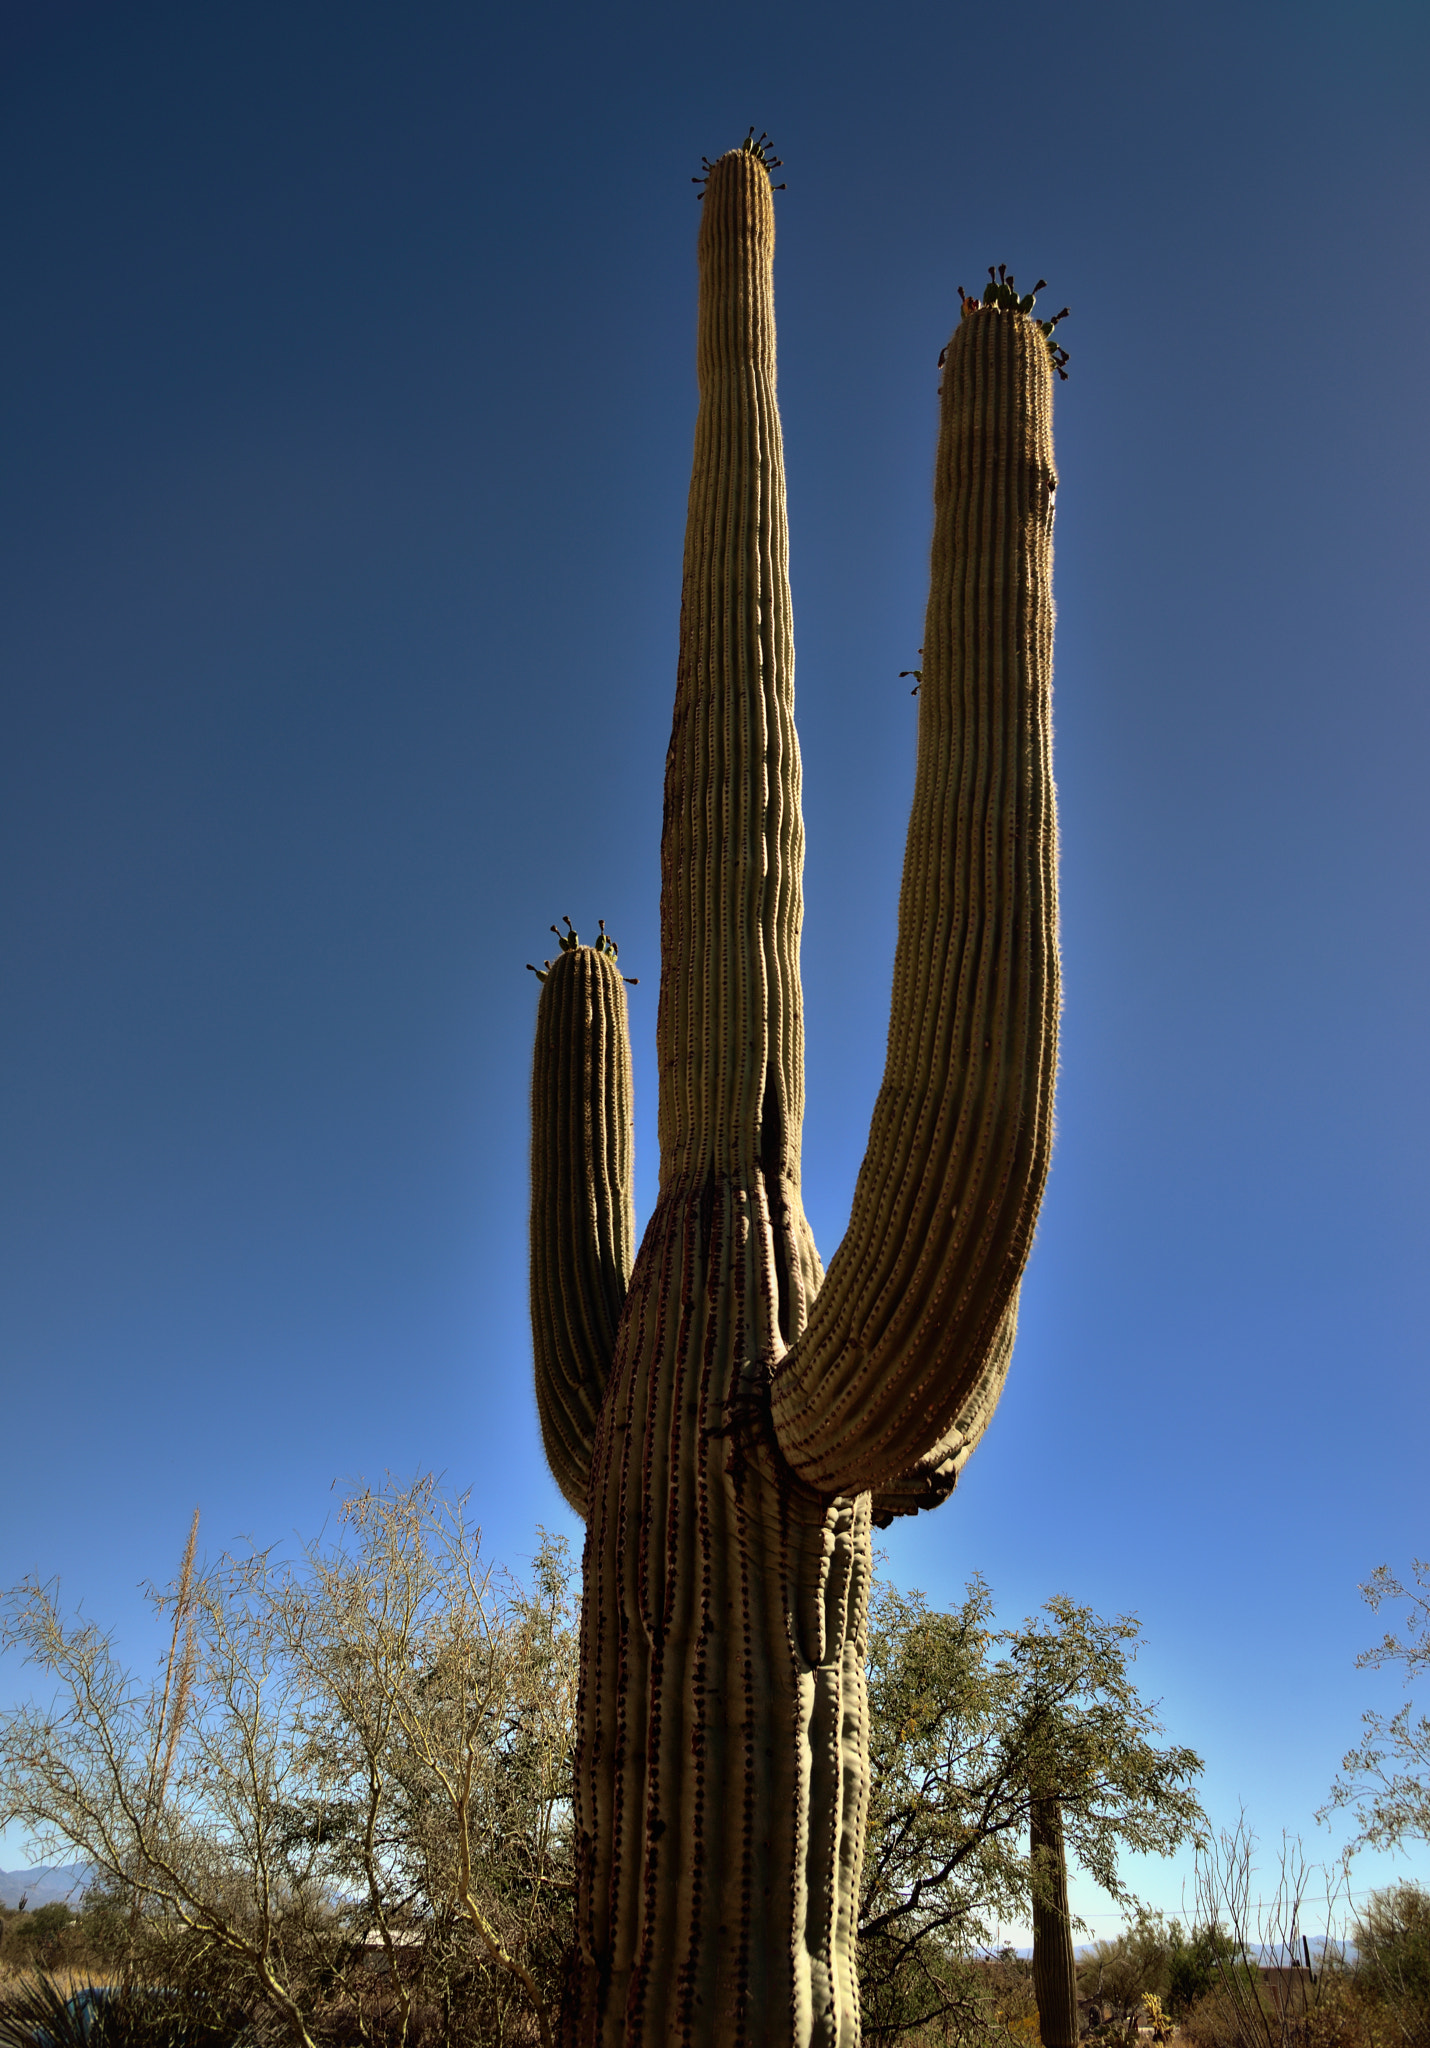 Nikon D800E + Nikon AF-S Nikkor 24-120mm F4G ED VR sample photo. A saguaro cactus in saguaro national park photography